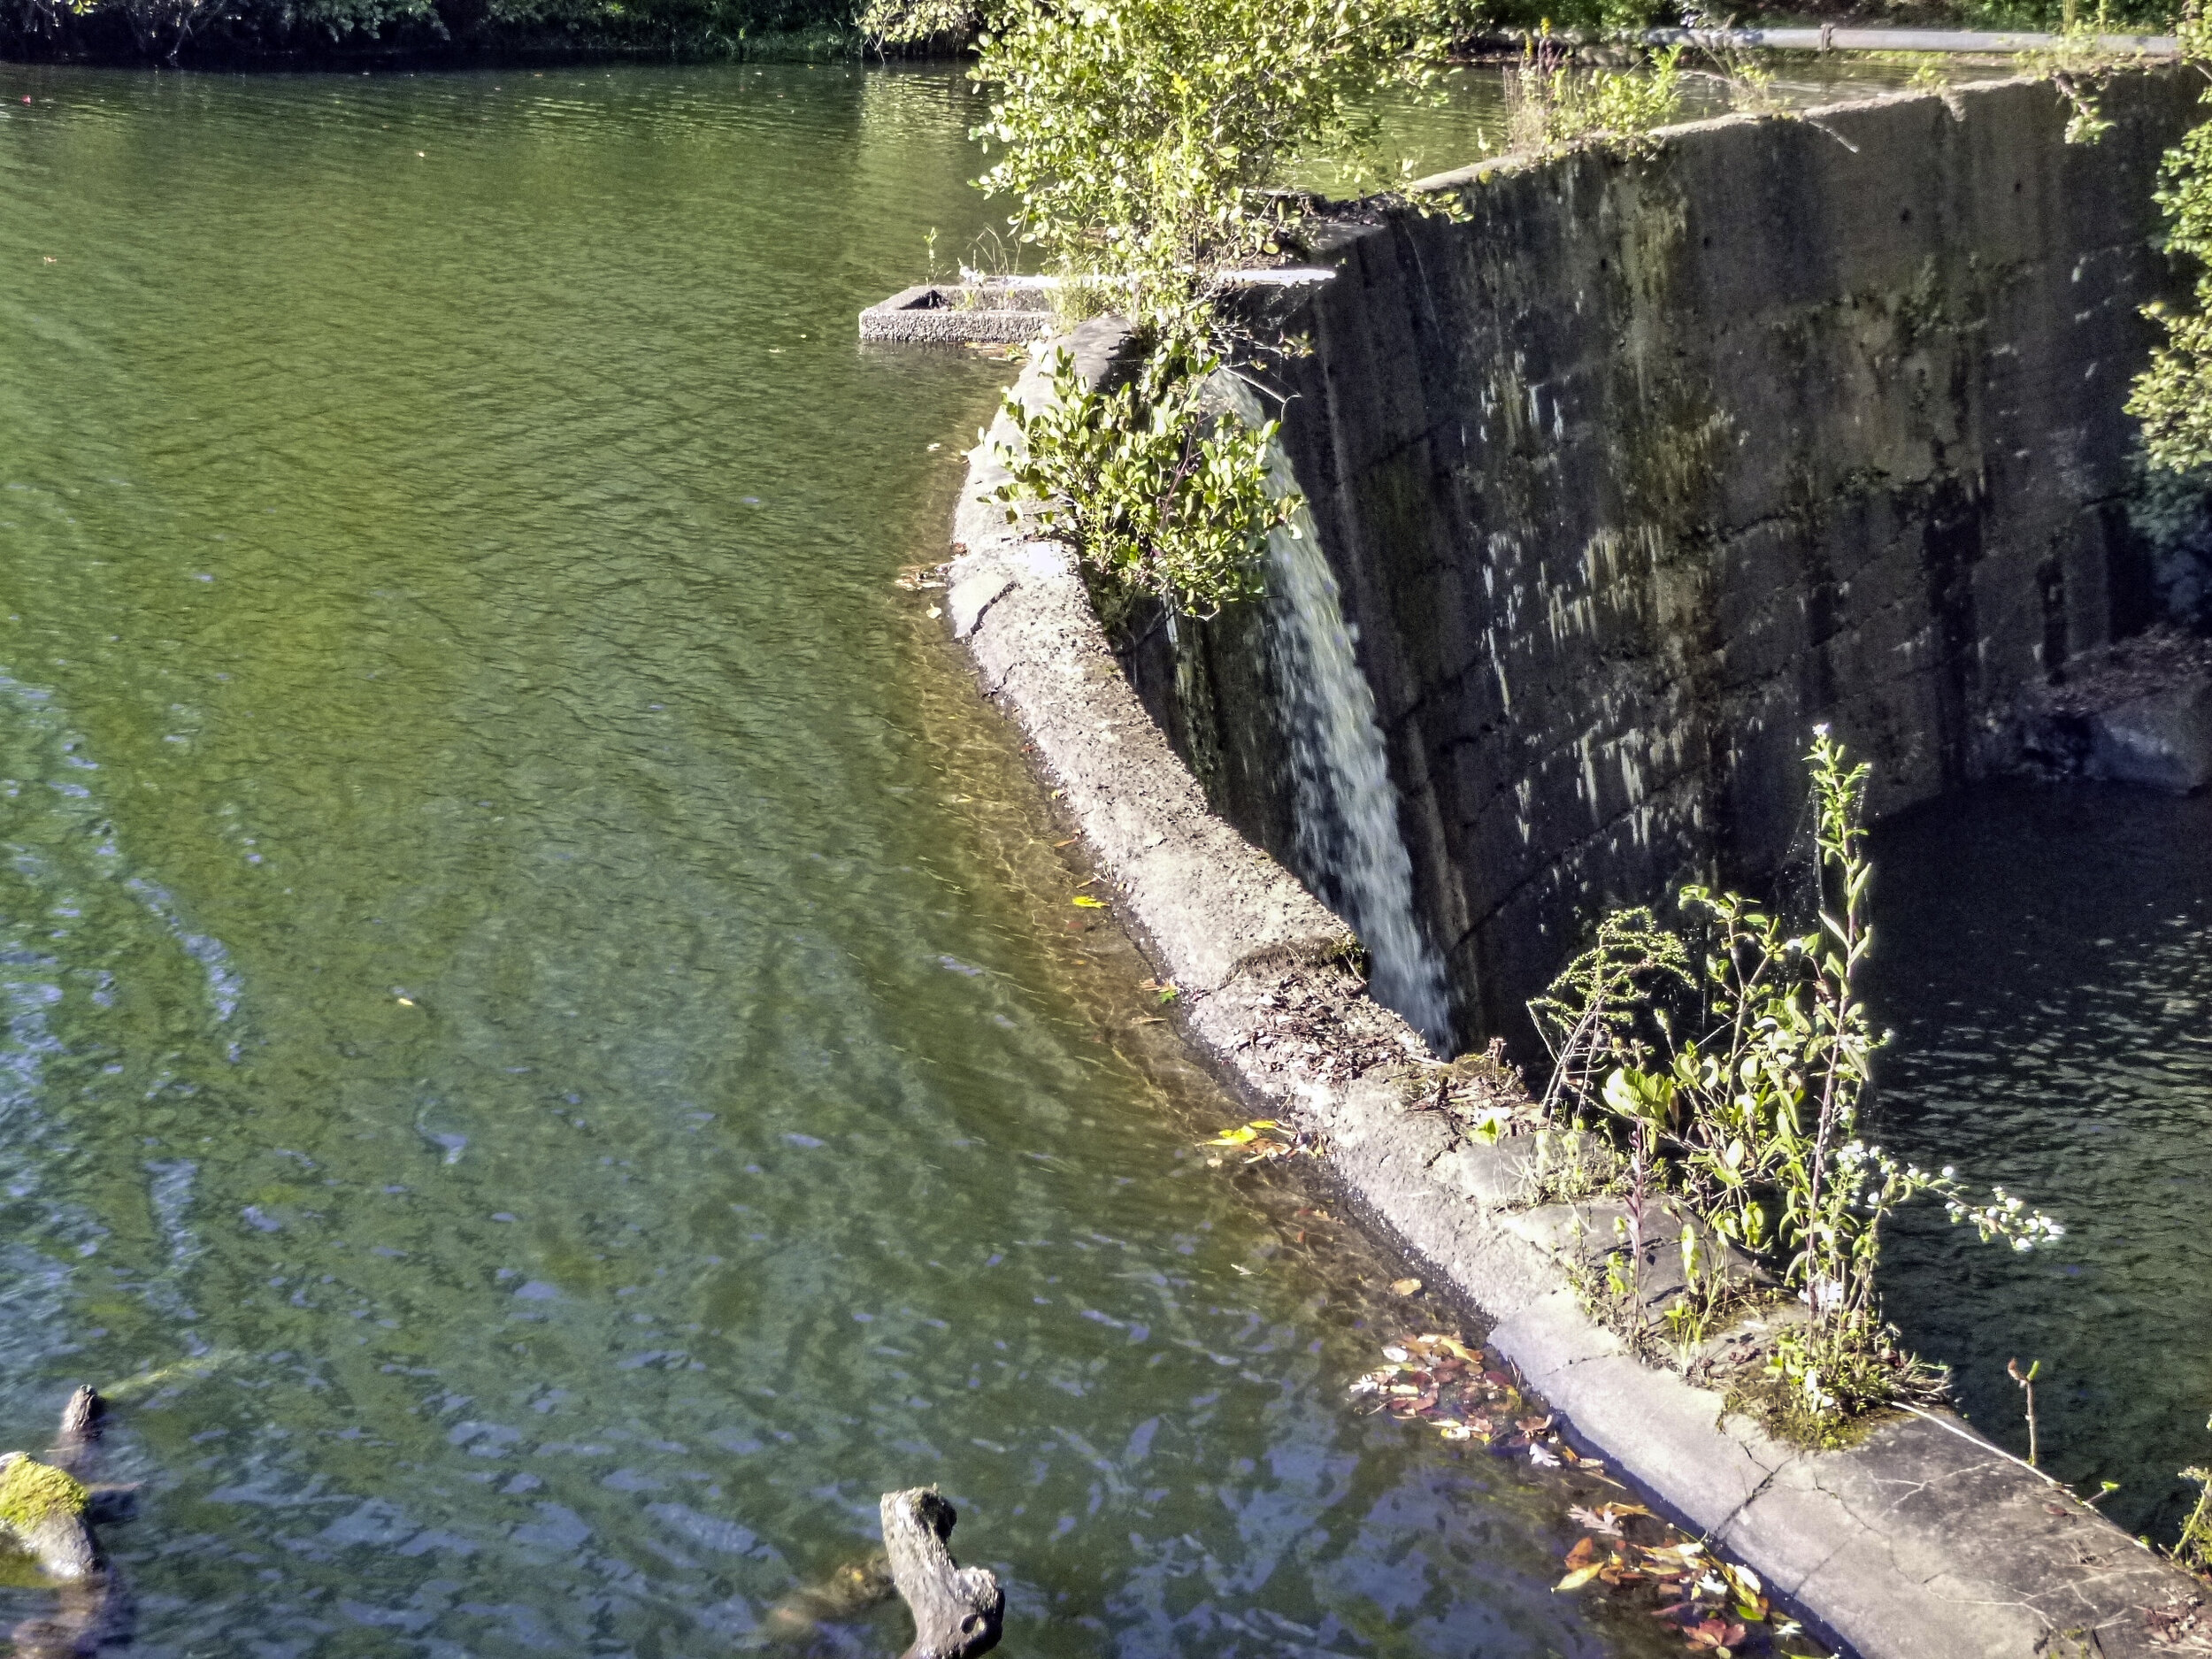  Lake Powhatan dam, Buncombe County, NC 